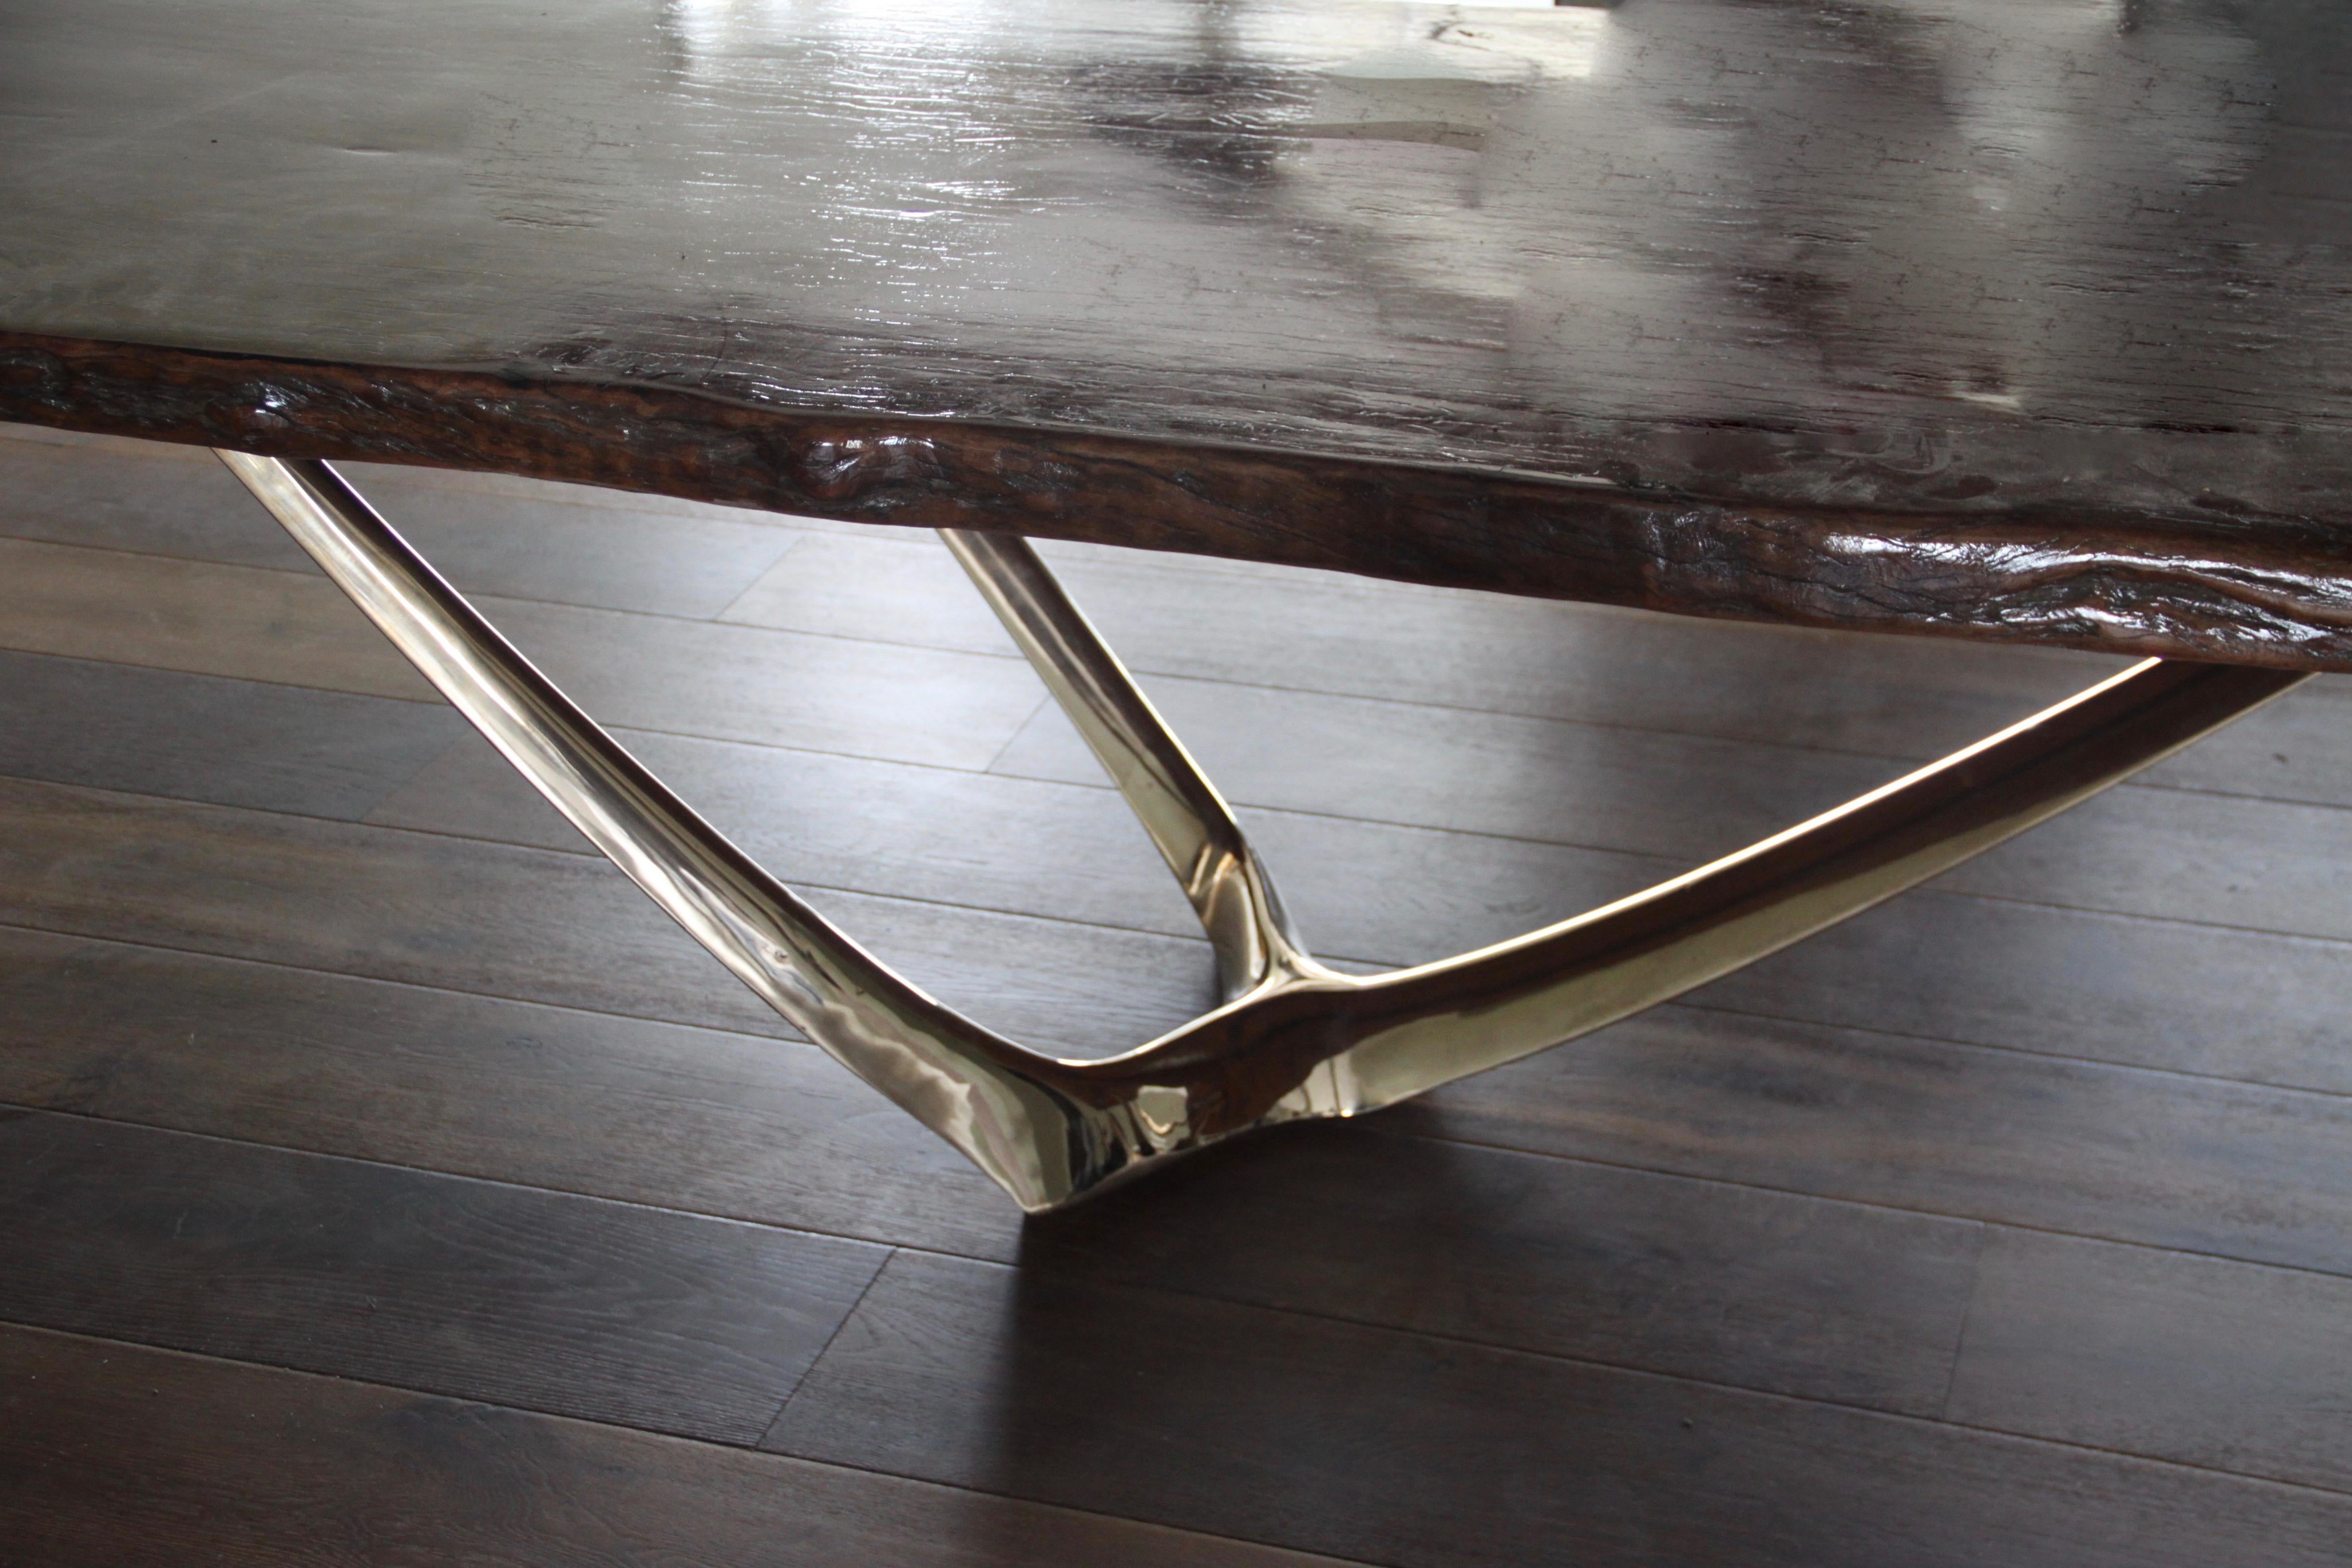 Der von Daniel Barbera entworfene Wishbone-Tischfuß besteht aus zwei unabhängigen Sockeln, die eine perfekte Basis für massive Holzplatten bilden. Jede der organischen Sockelformen aus Sandgussbronze hat drei Berührungspunkte mit dem Holz und einen